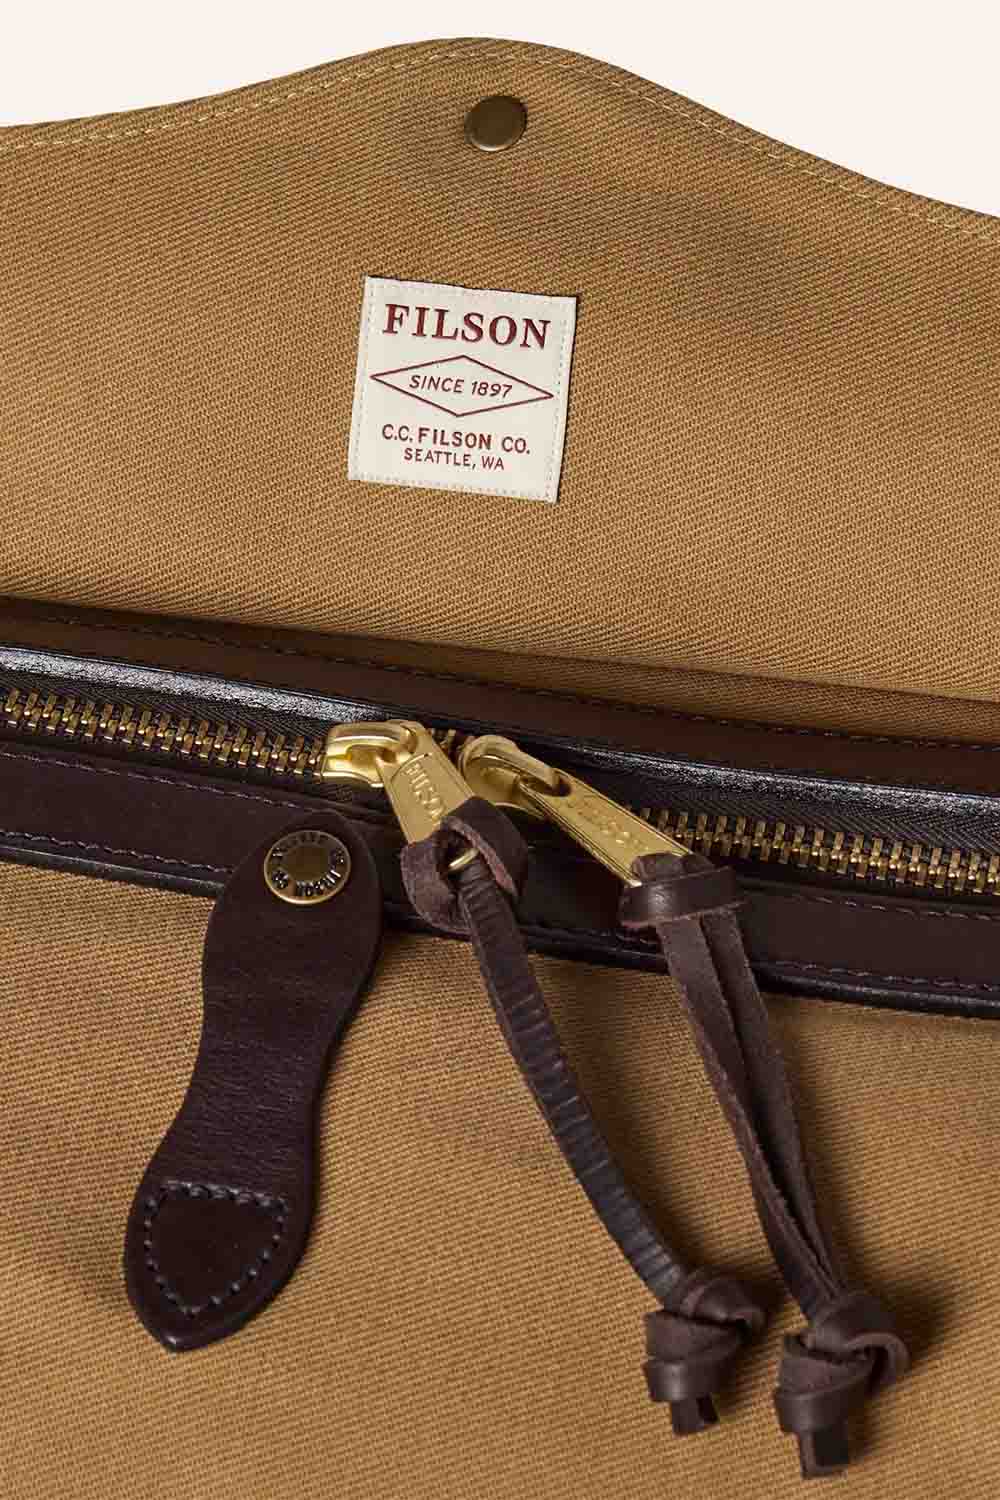 Filson - Medium Duffle Bag - Tan - Zipper